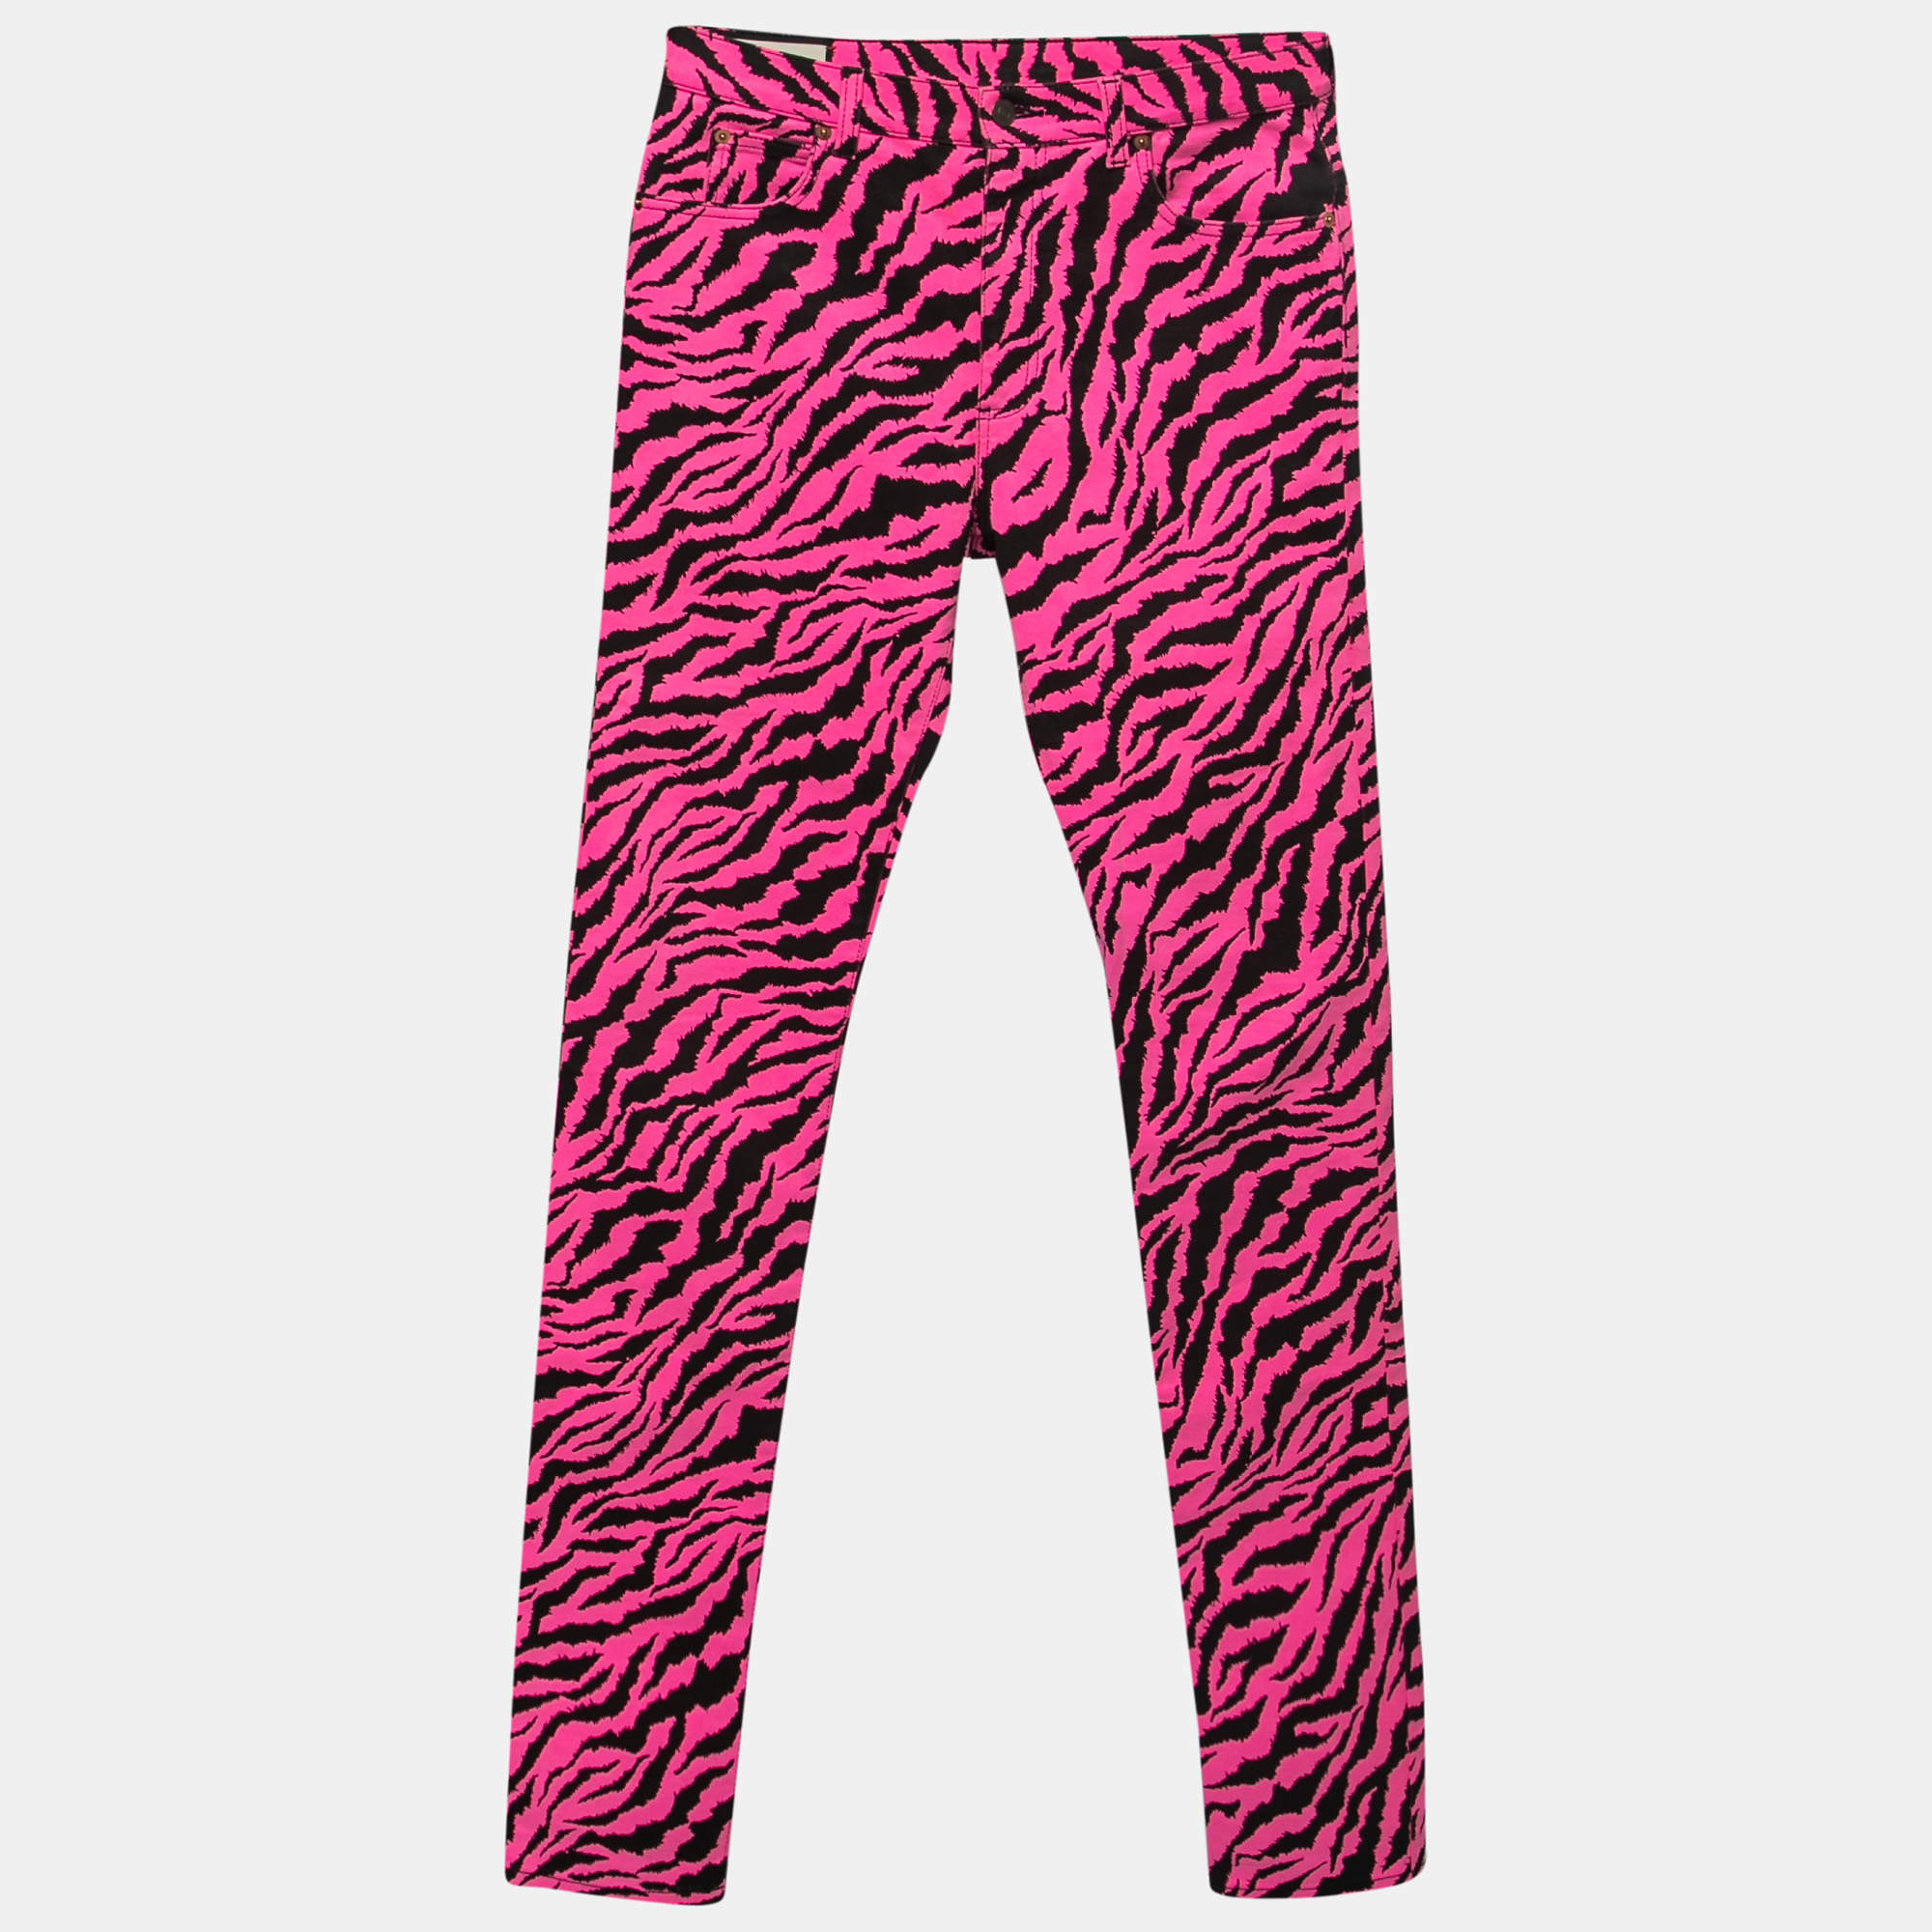 Gucci Pink & Black Zebra Print Denim Skinny Jeans L Waist 31